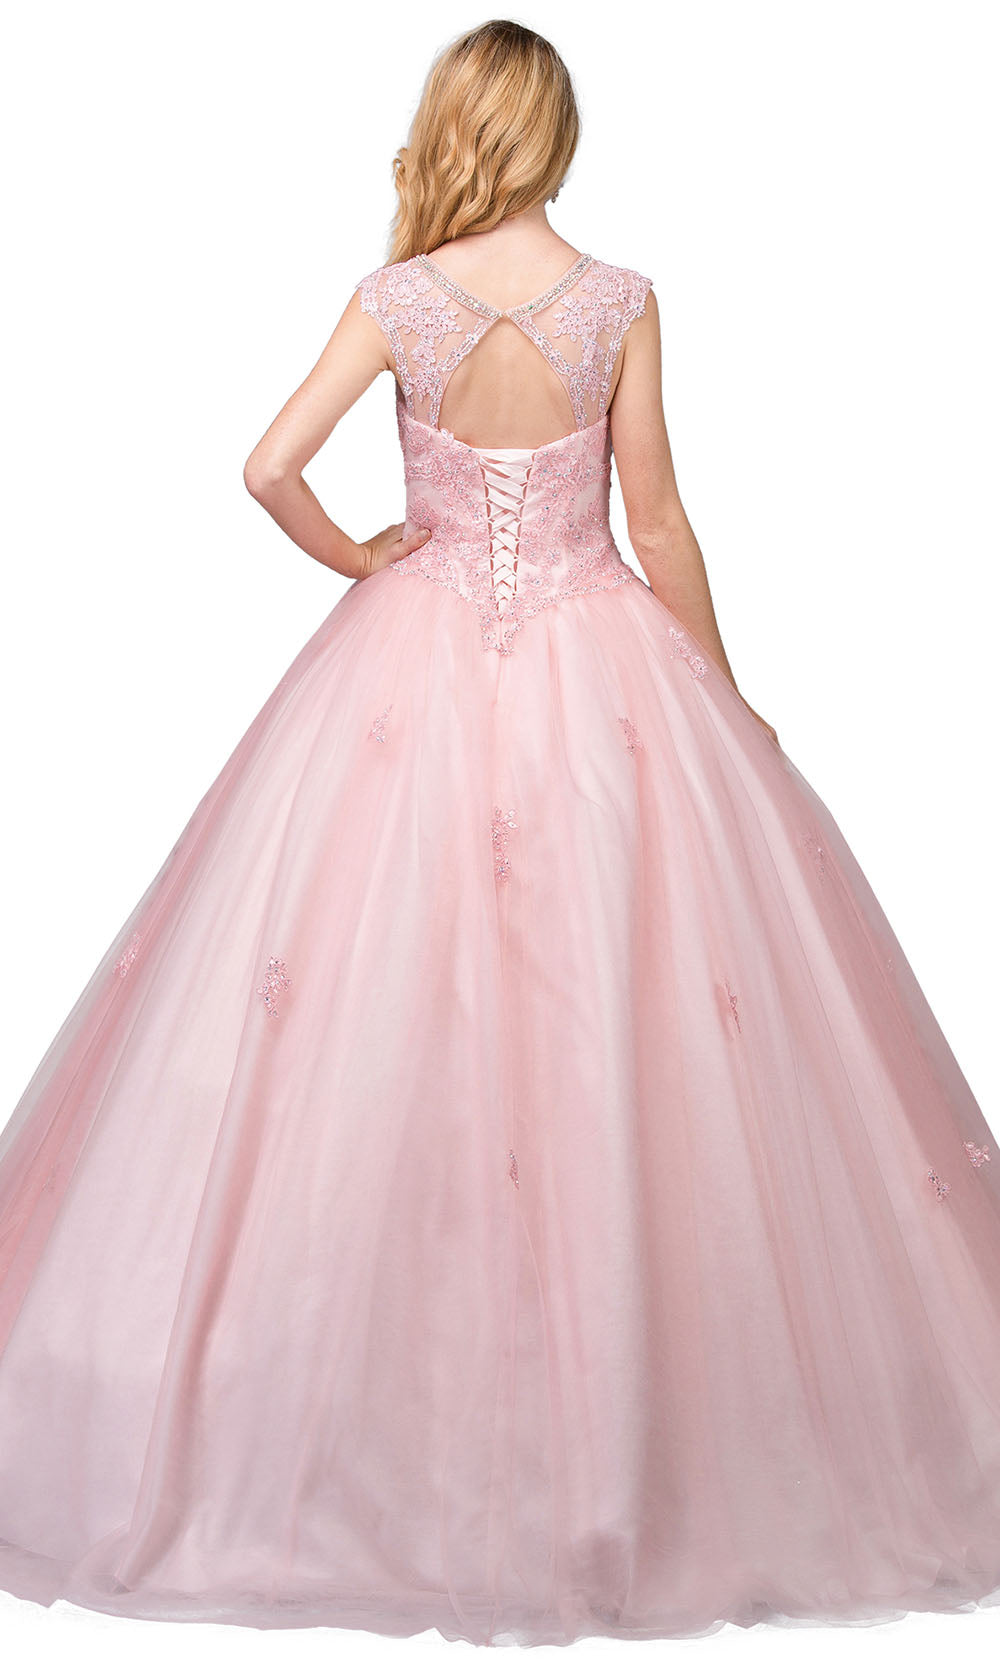 Dancing Queen - 1223 Cap Sleeve Ornate Applique Ballgown In Pink